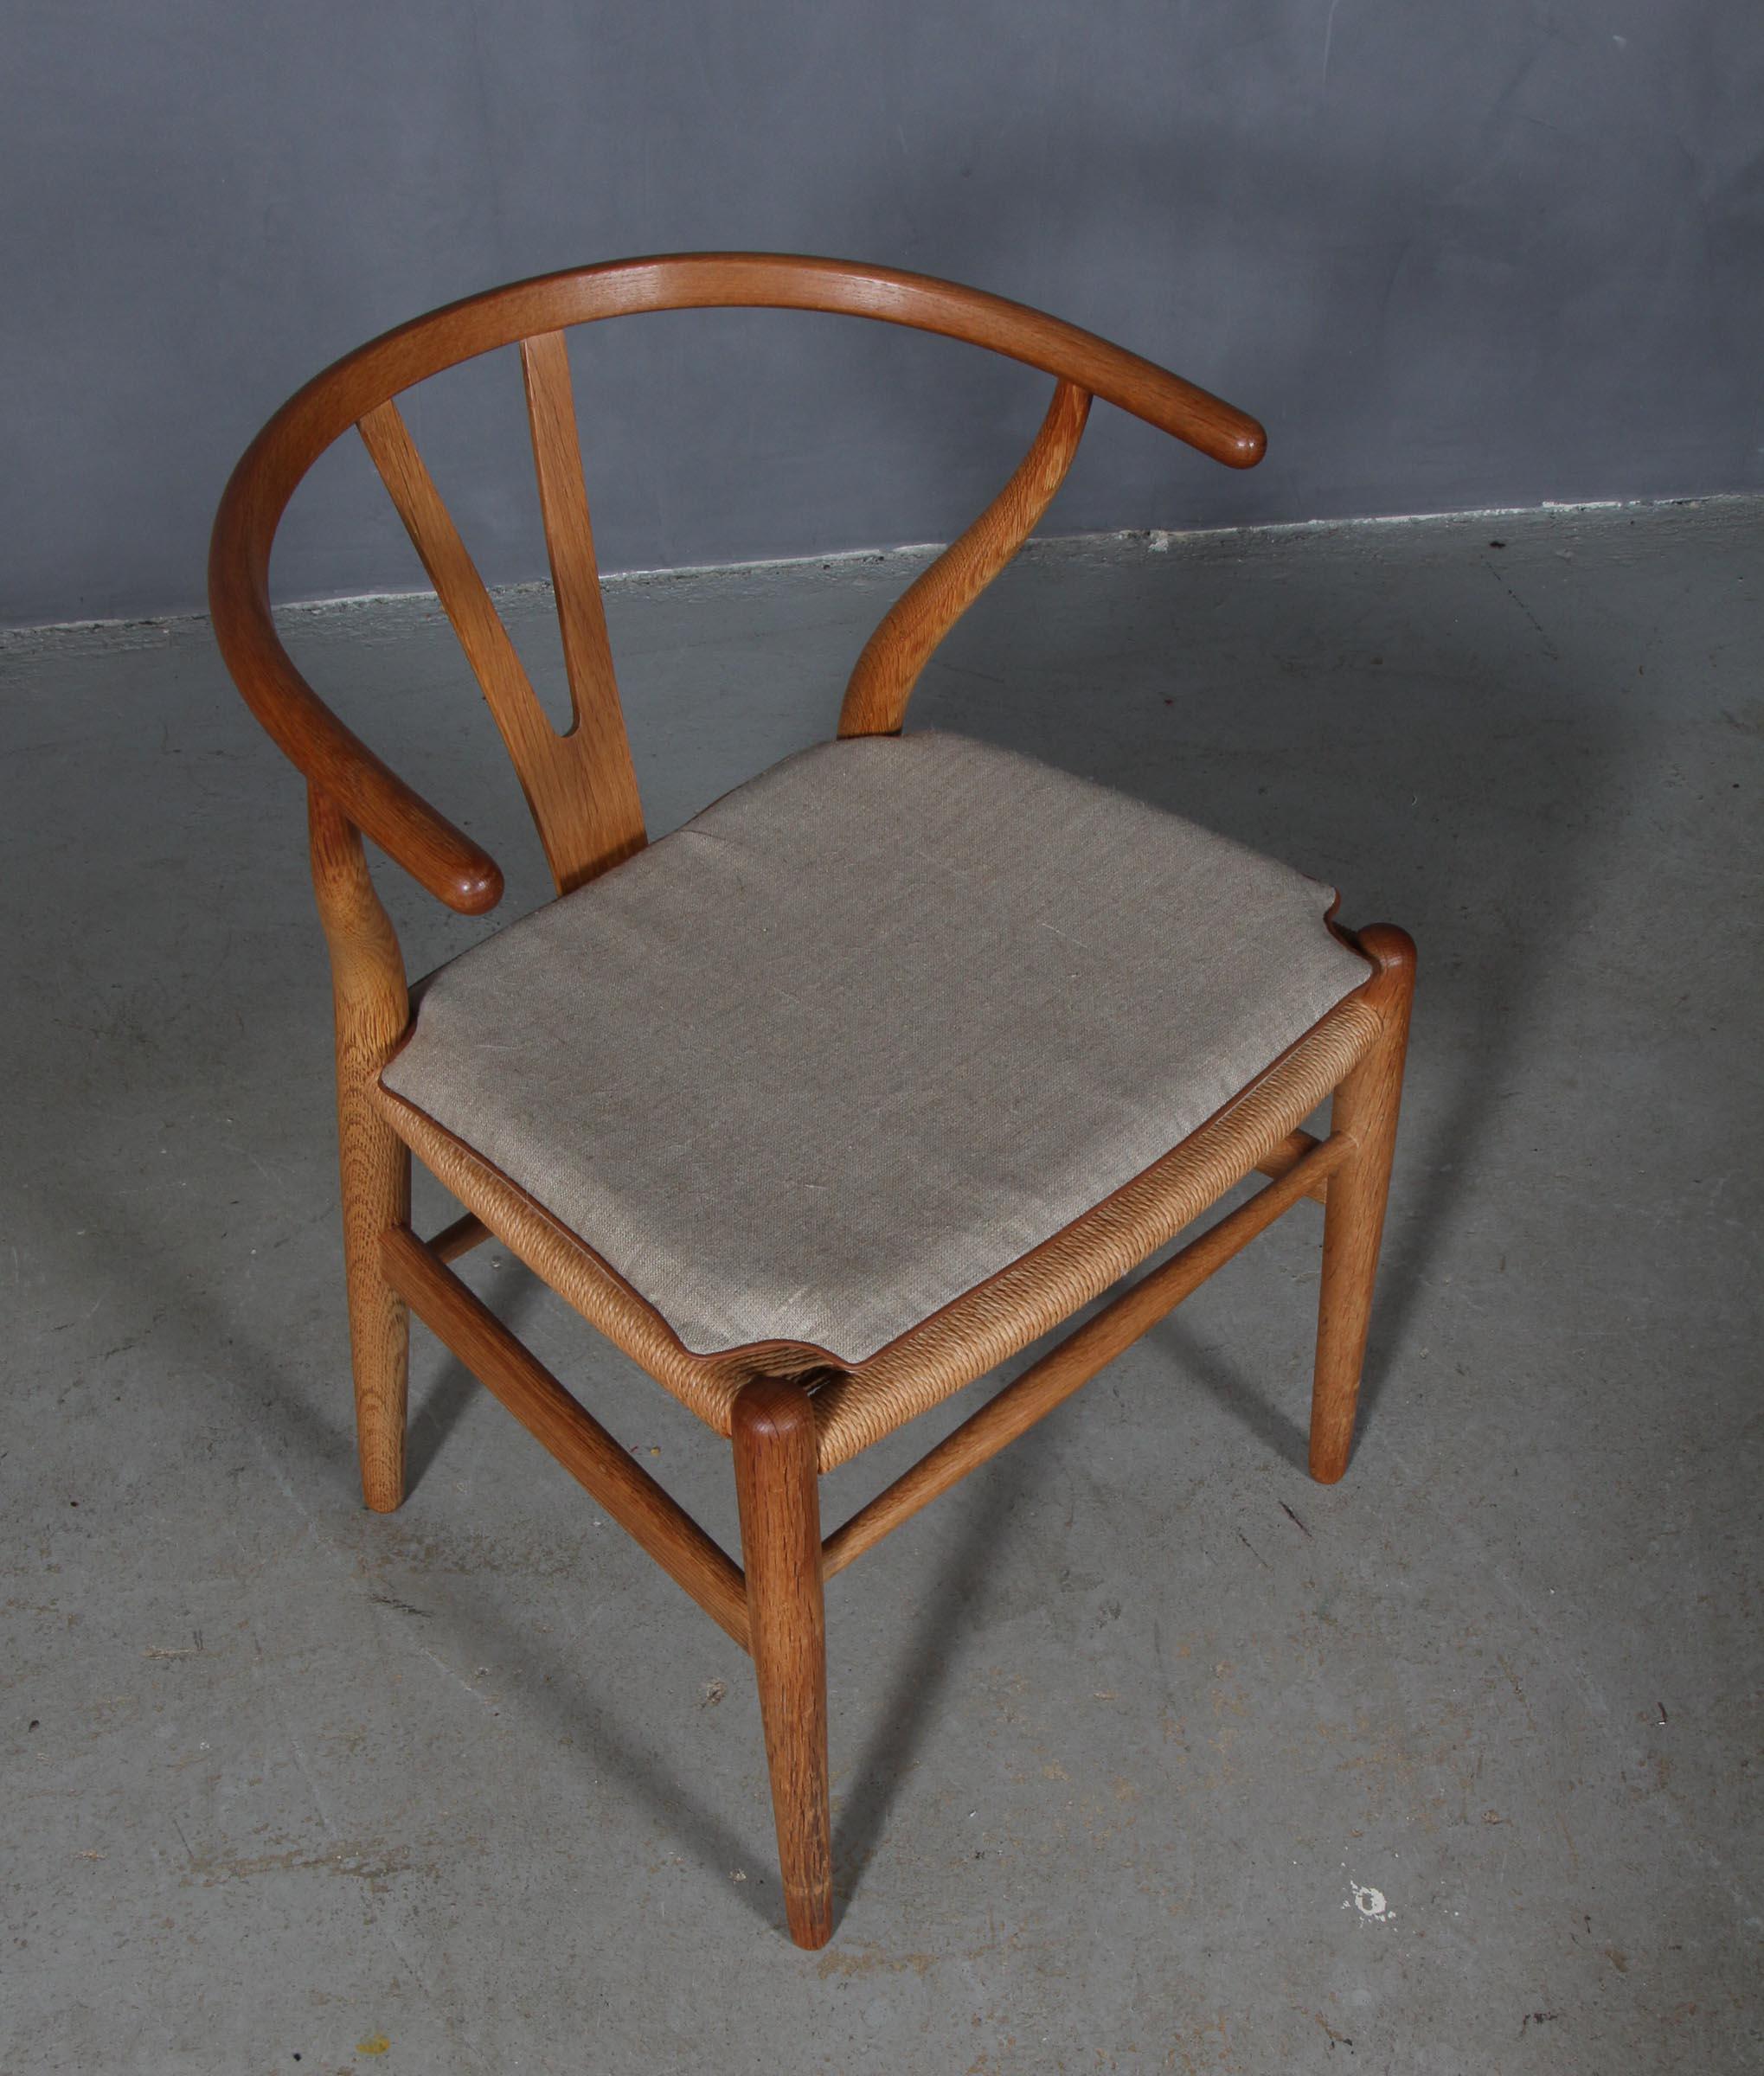 Coussins Hans J. Wegner pour chaise à boudin modèle CH24.

Fabriqué en toile avec un tube en cuir et une mousse de bonne qualité.

Seulement le coussin, pas la chaise.